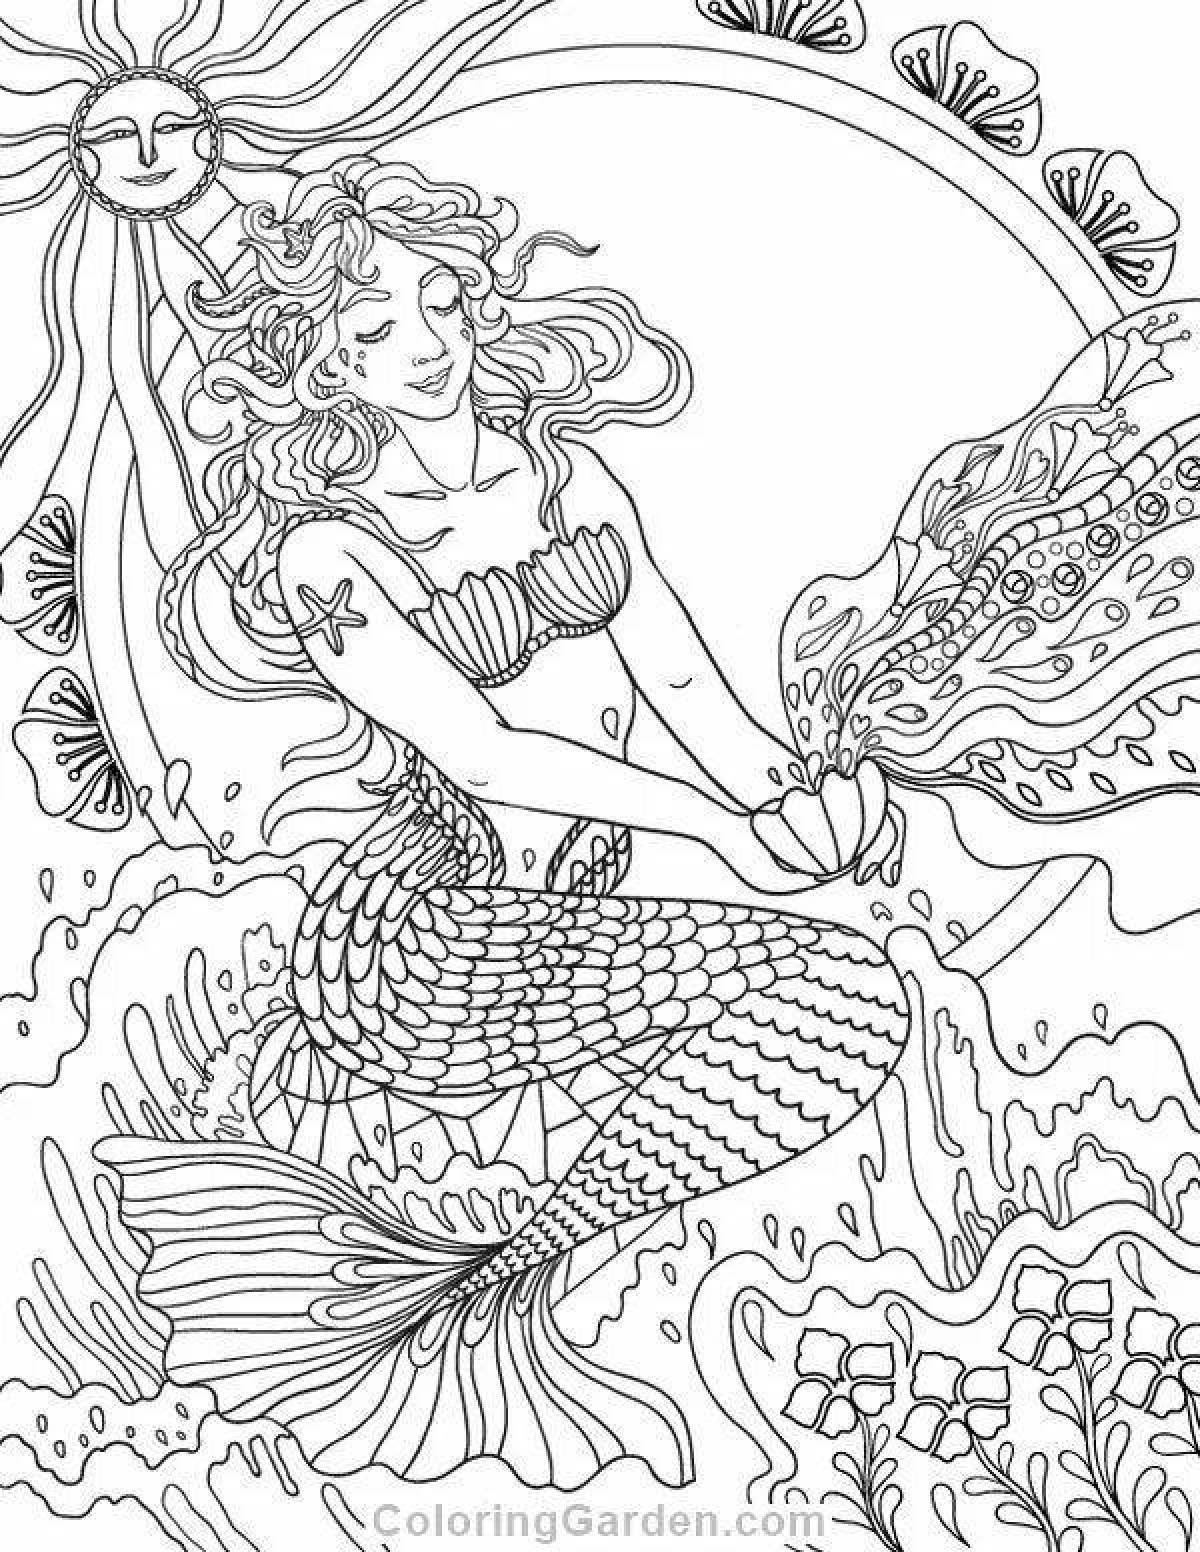 Shining coloring antistress mermaid